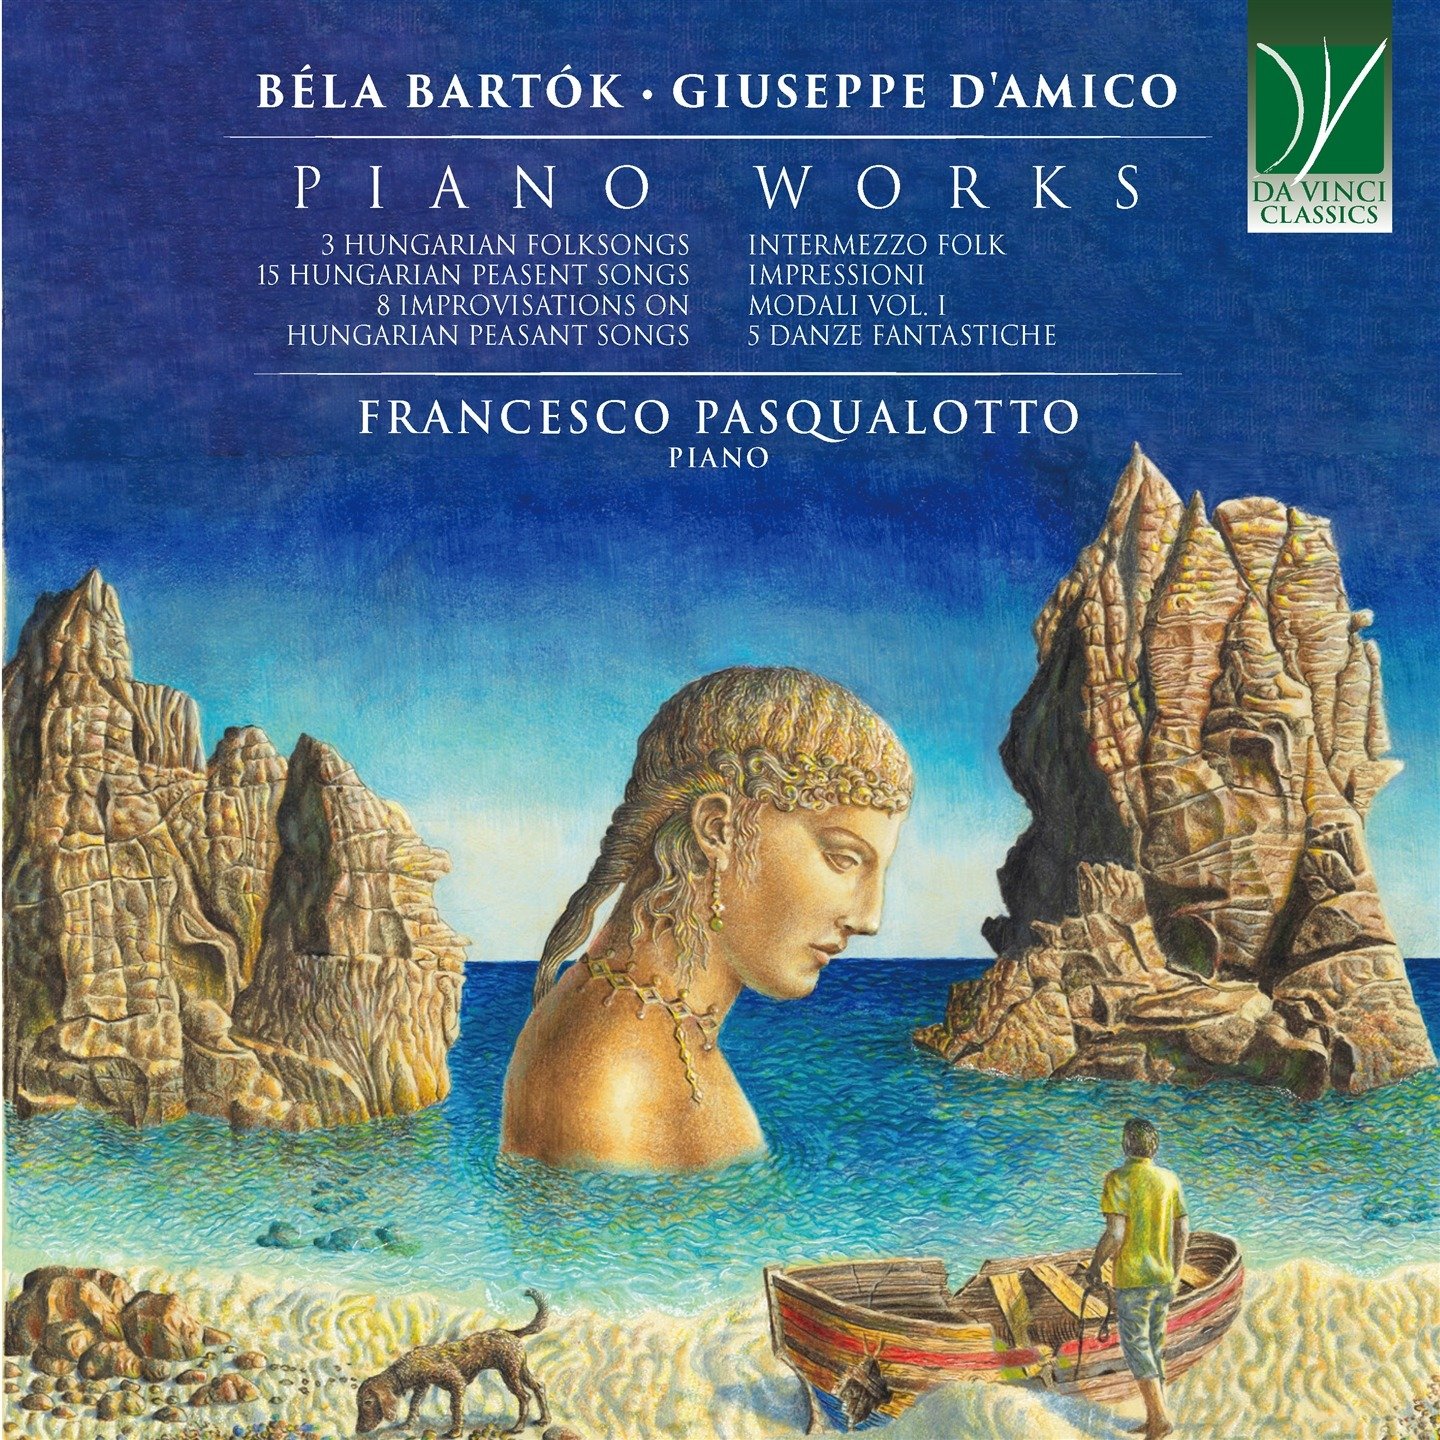 Bela Bartok, Giuseppe D'amico: Piano Works